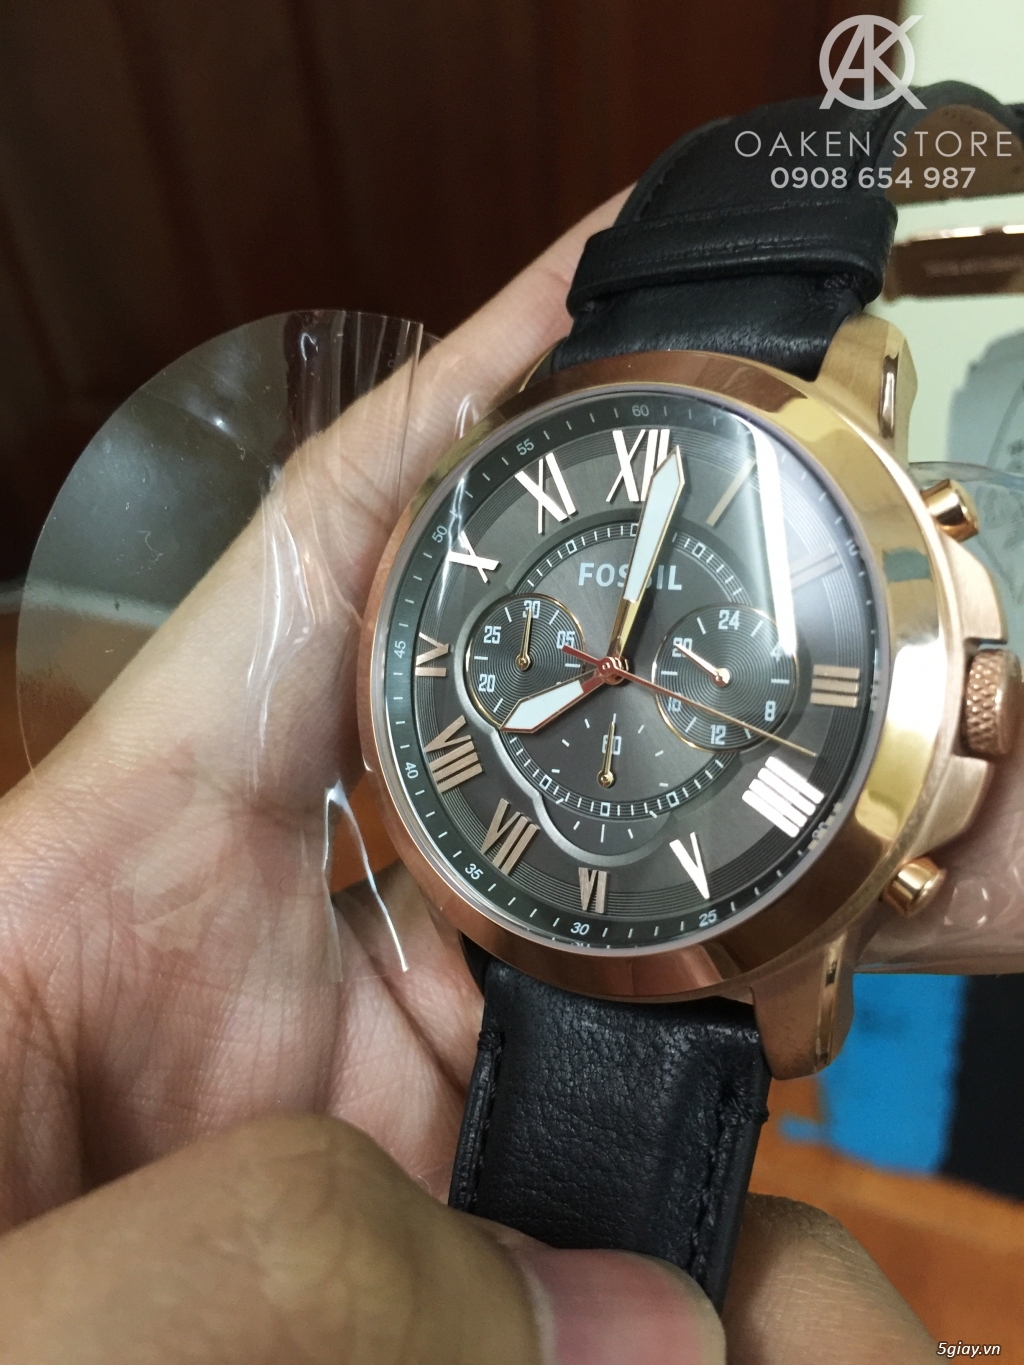 Oaken Store - Đồng hồ chính hãng xách tay giá tốt - 10